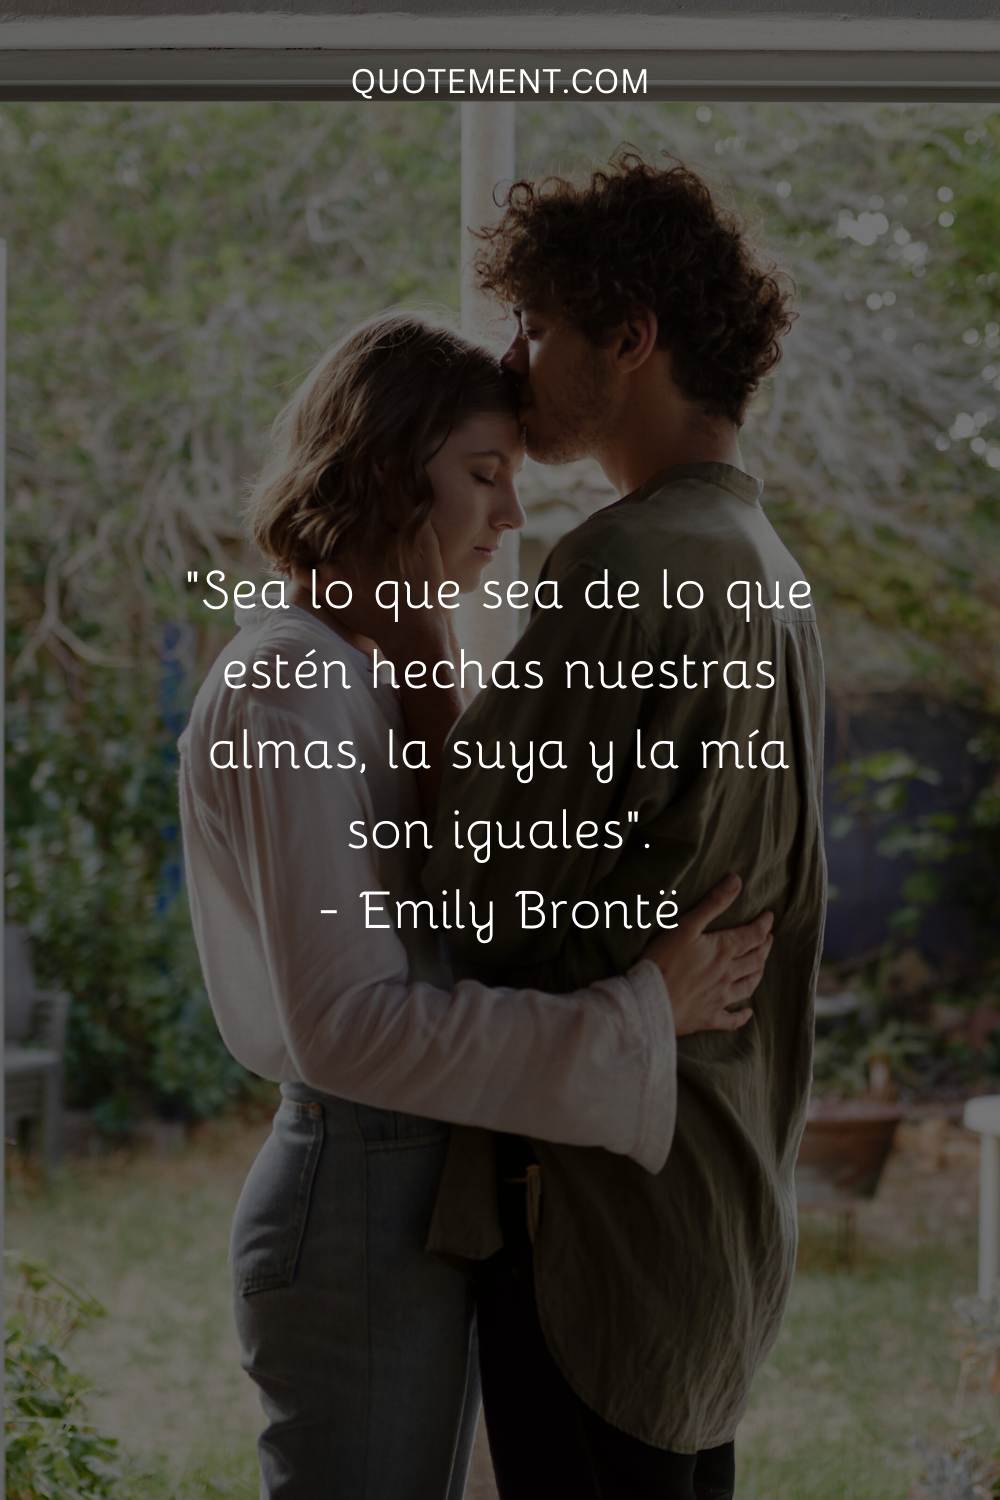 Sean cuales sean nuestras almas, la suya y la mía son iguales. - Emily Brontë